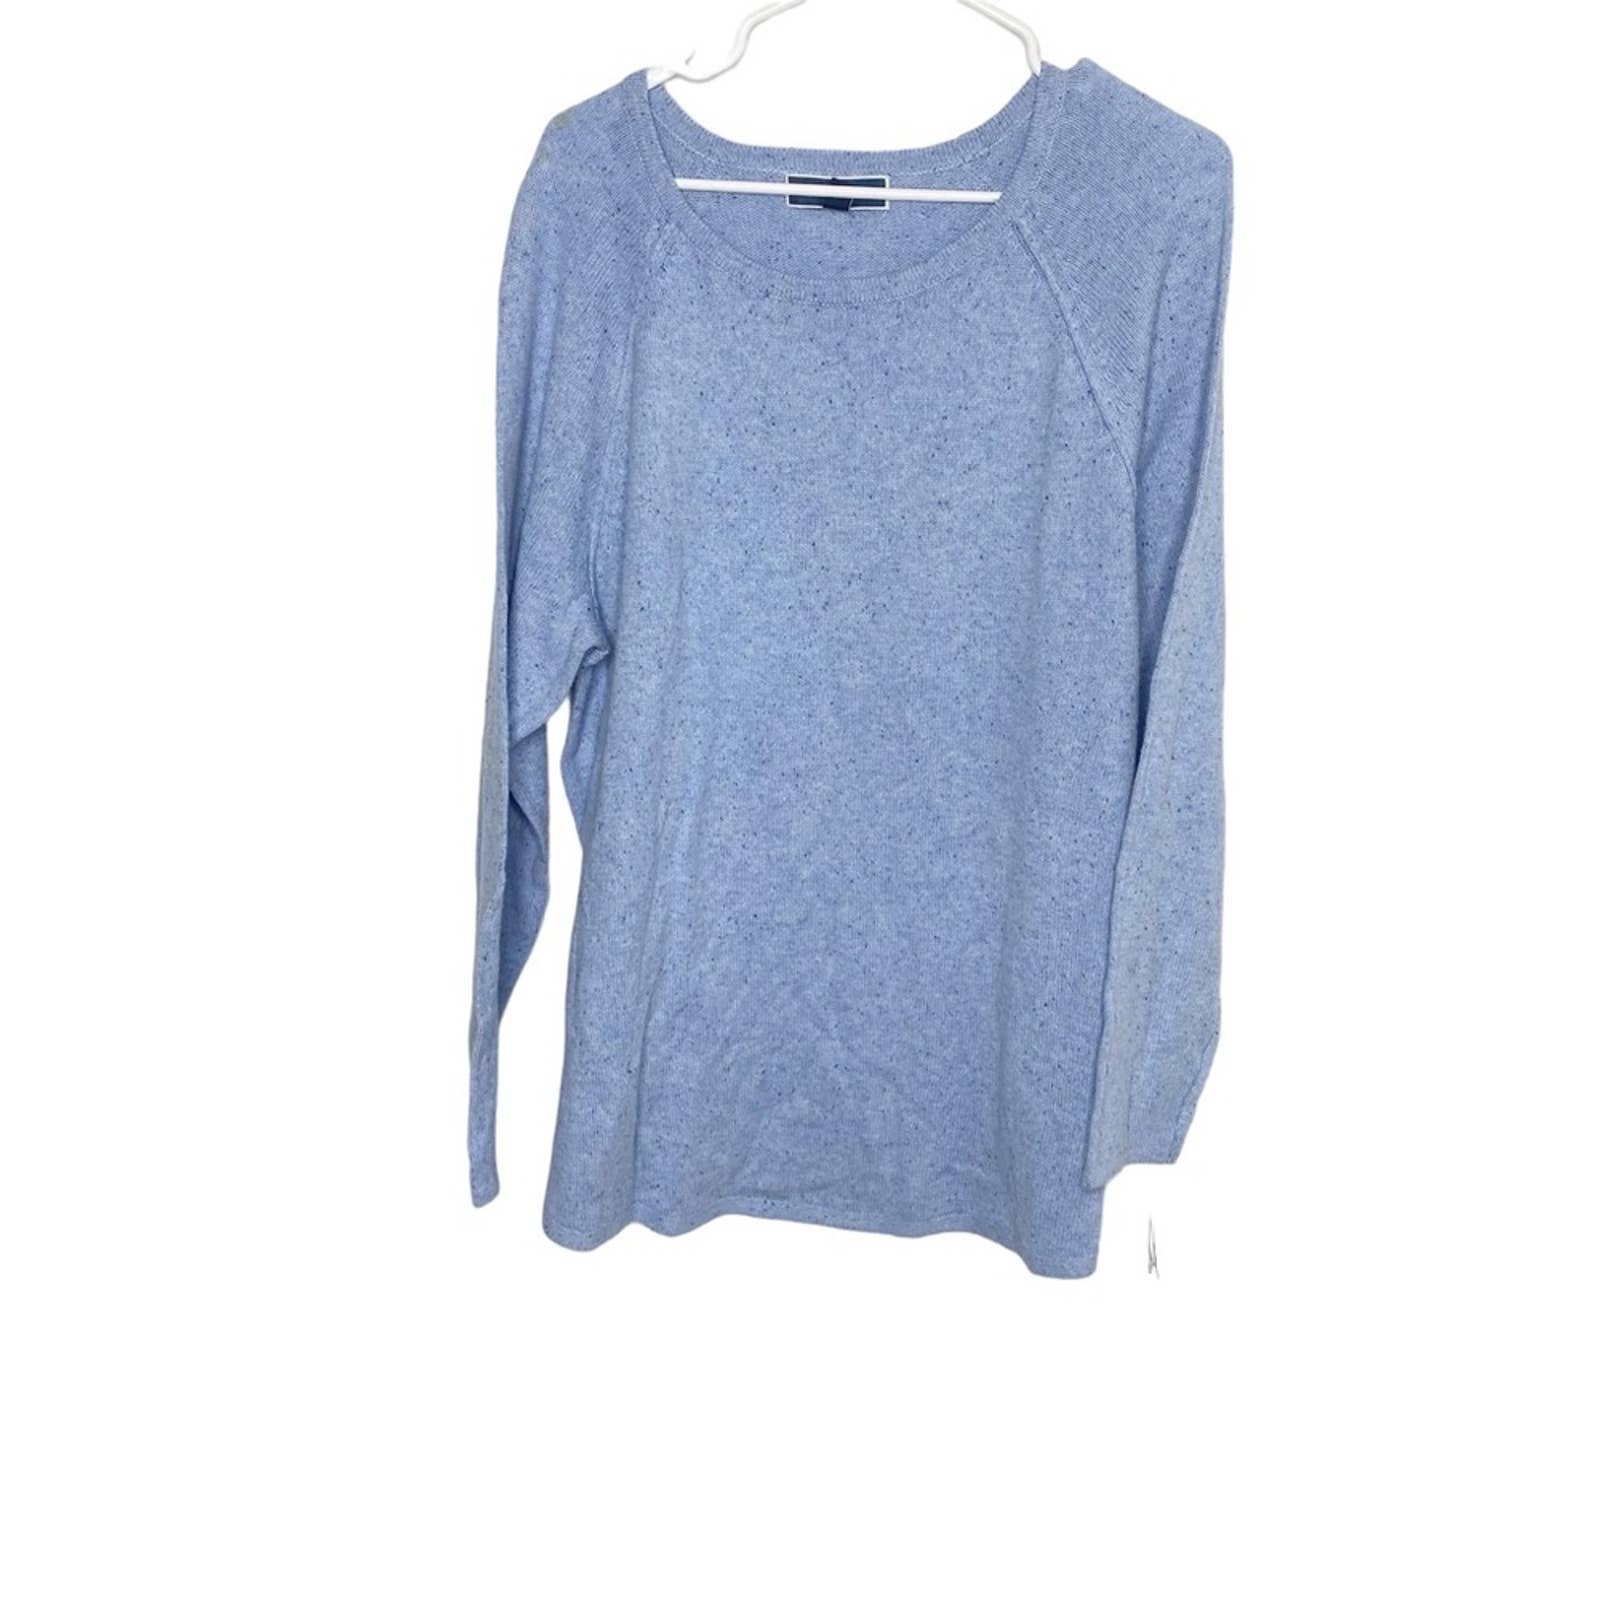 Elegant Karen Scott blue heather sweater size 0X NWT fP